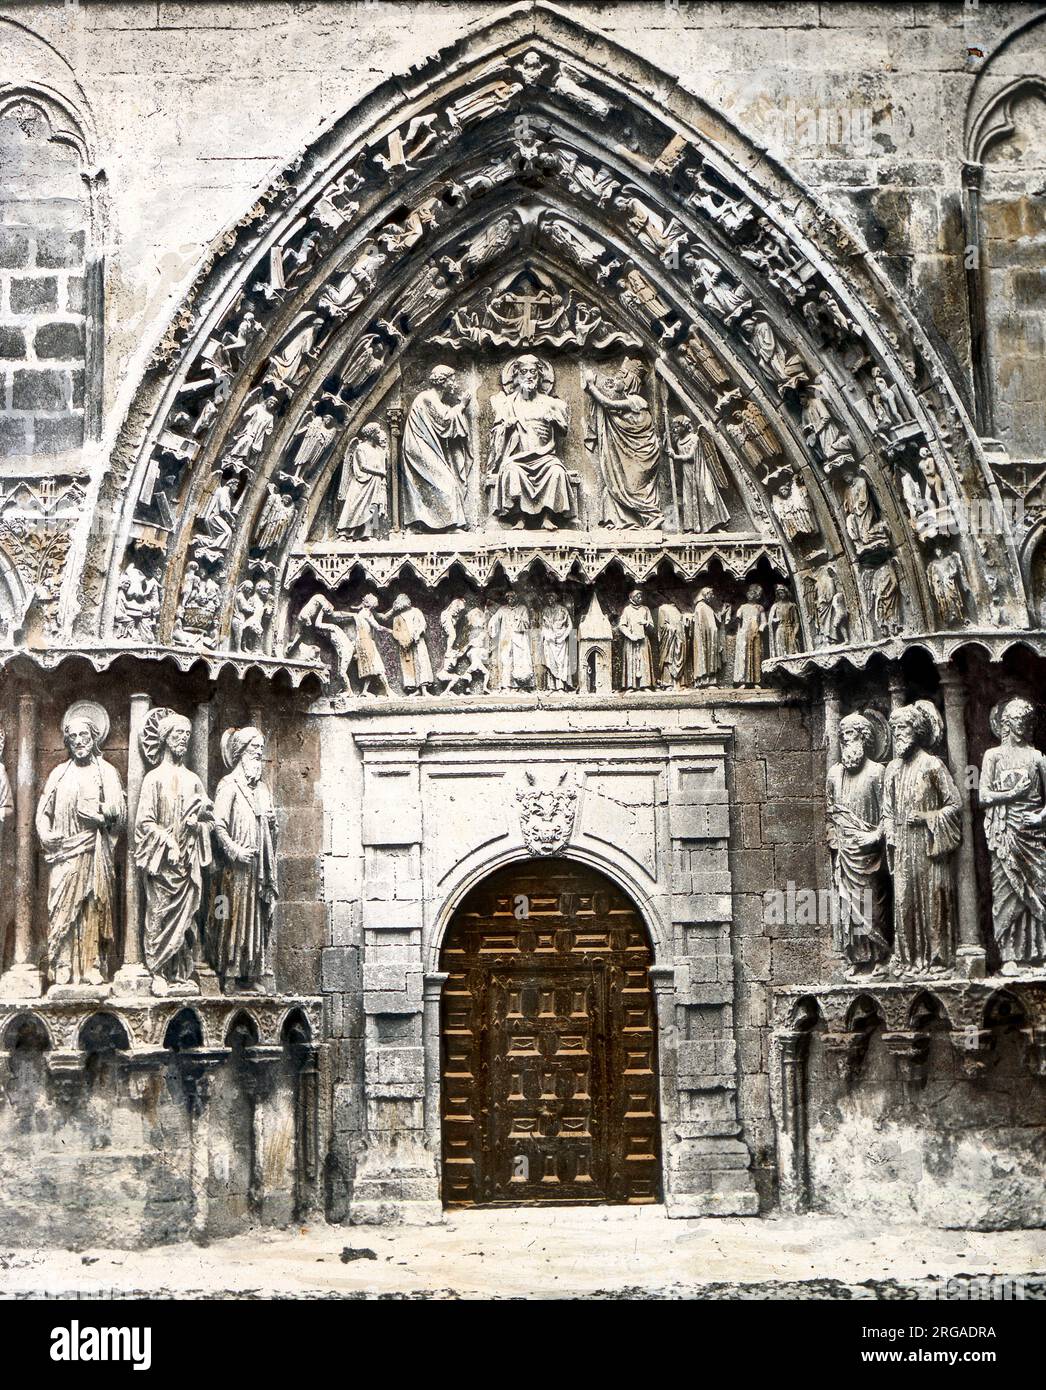 Porte gothique médiévale d'une cathédrale française non identifiée Banque D'Images